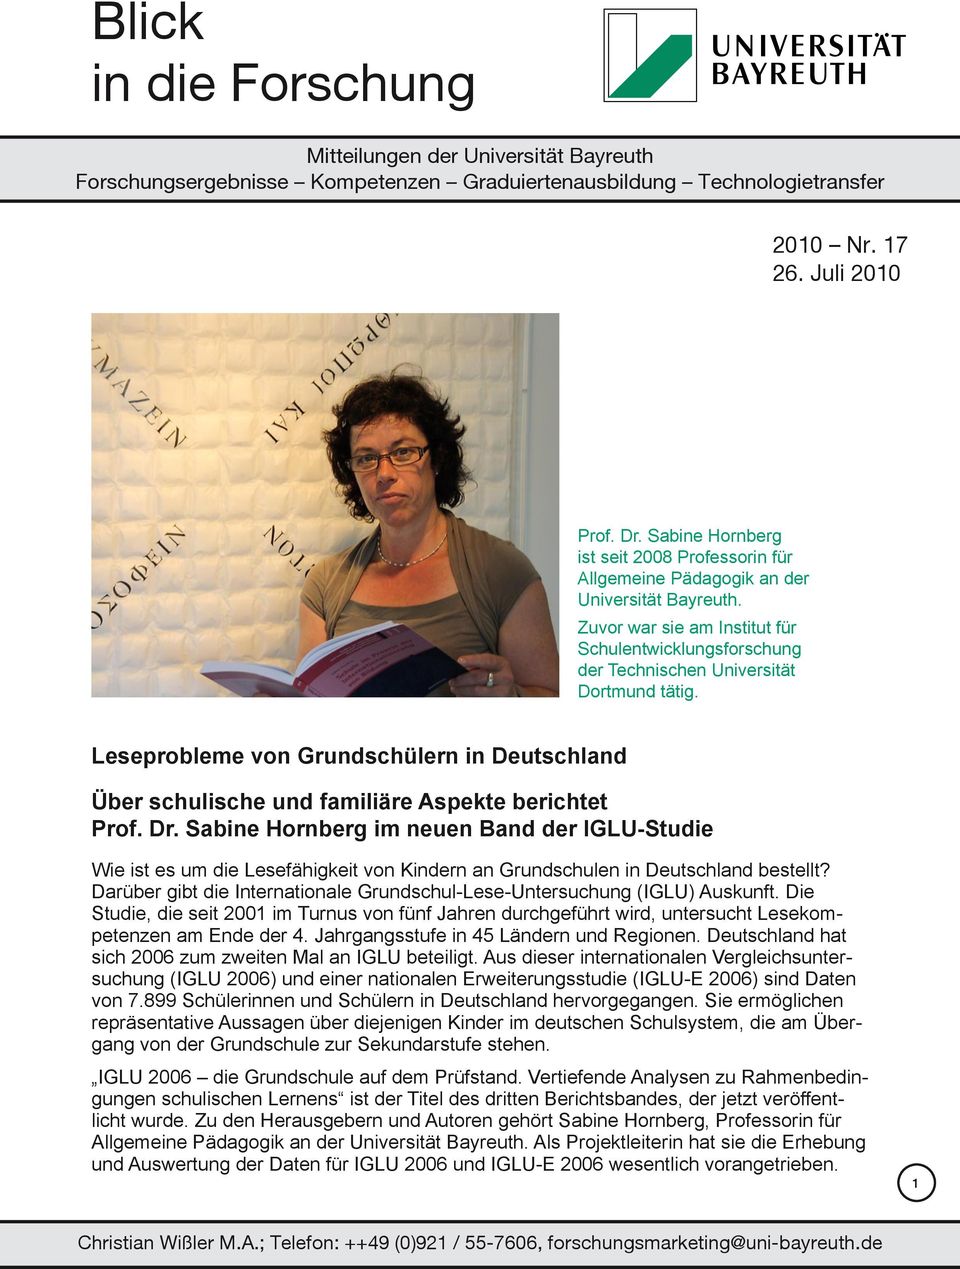 Dr. Sabine Hornberg im neuen Band der IGLU-Studie Wie ist es um die Lesefähigkeit von Kindern an Grundschulen in Deutschland bestellt?